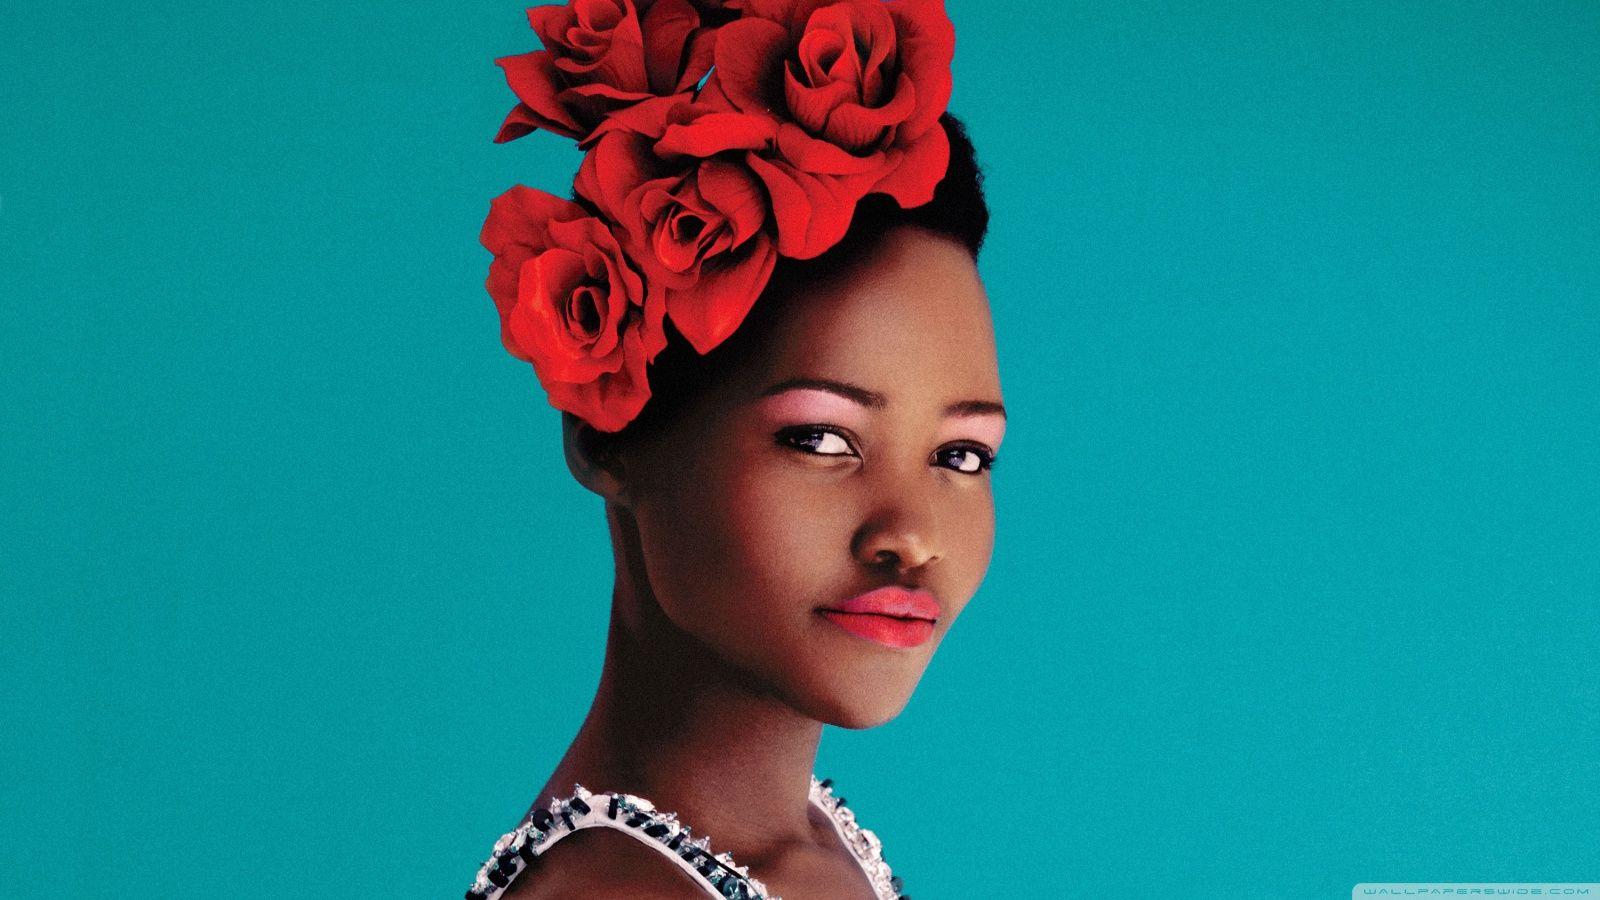 Lupita Nyong'o Portrait HD desktop wallpaper, High Definition